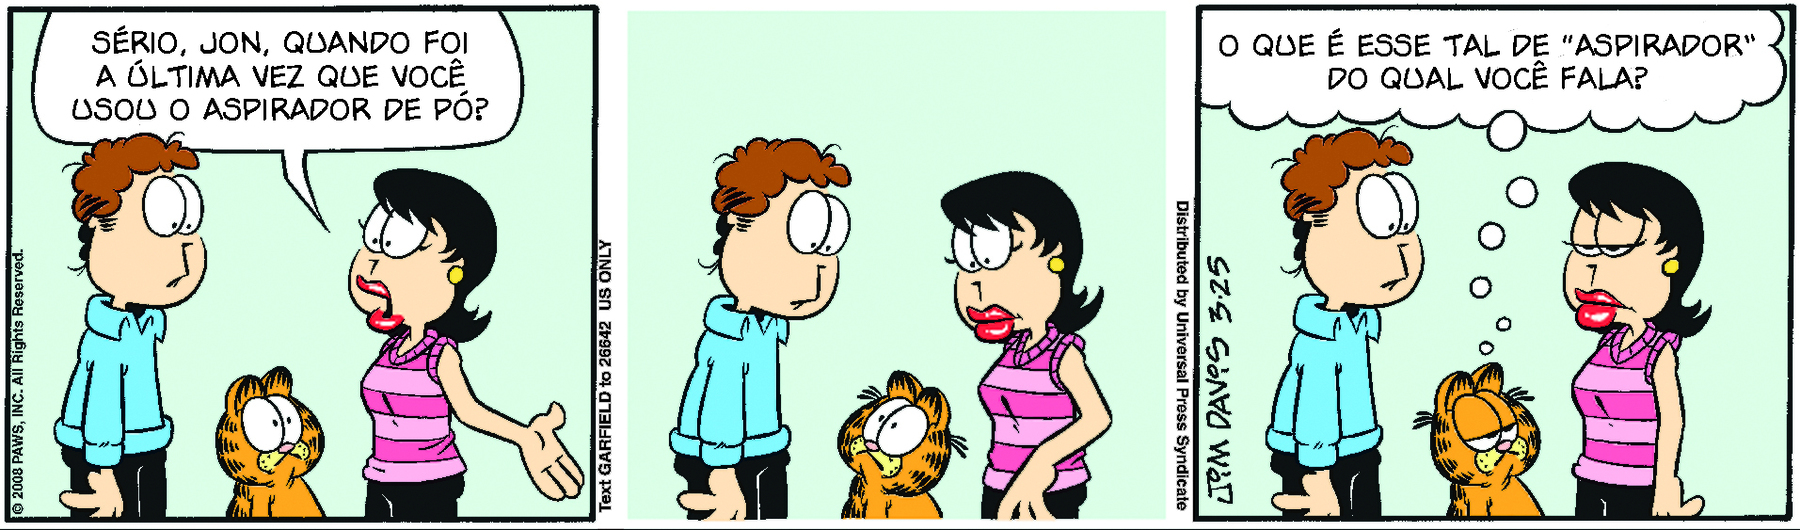 Tirinha. Tirinha composta por três quadros na horizontal. Apresenta como personagens: Jon, homem de cabelos castanhos encaracolados, usando camisa de mangas compridas azul e calça preta. Liz, mulher de cabelos curtos pretos penteados para o lado, com regata listrada em tons de rosa e calça preta. Garfield, gato de pelos laranjas e manchas pretas. Quadro 1 – Jon e Liz estão em pé olhando um para o outro. Entre eles, está Garfield olhando para Liz. Ela fala para Jon: SÉRIO, JON, QUANDO FOI A ÚLTIMA VEZ QUE VOCÊ USOU O ASPIRADOR DE PÓ? Quadro 2 – Garfield continua ao centro de Jon e Liz. Enquanto Garfield olha para Jon, Liz e Jon olham para o gato. Quadro 3 – Garfield está com as pálpebras abaixadas, olha para Liz e pensa: O QUE É ESSE TAL DE “ASPIRADOR” DO QUAL VOCÊ FALA?